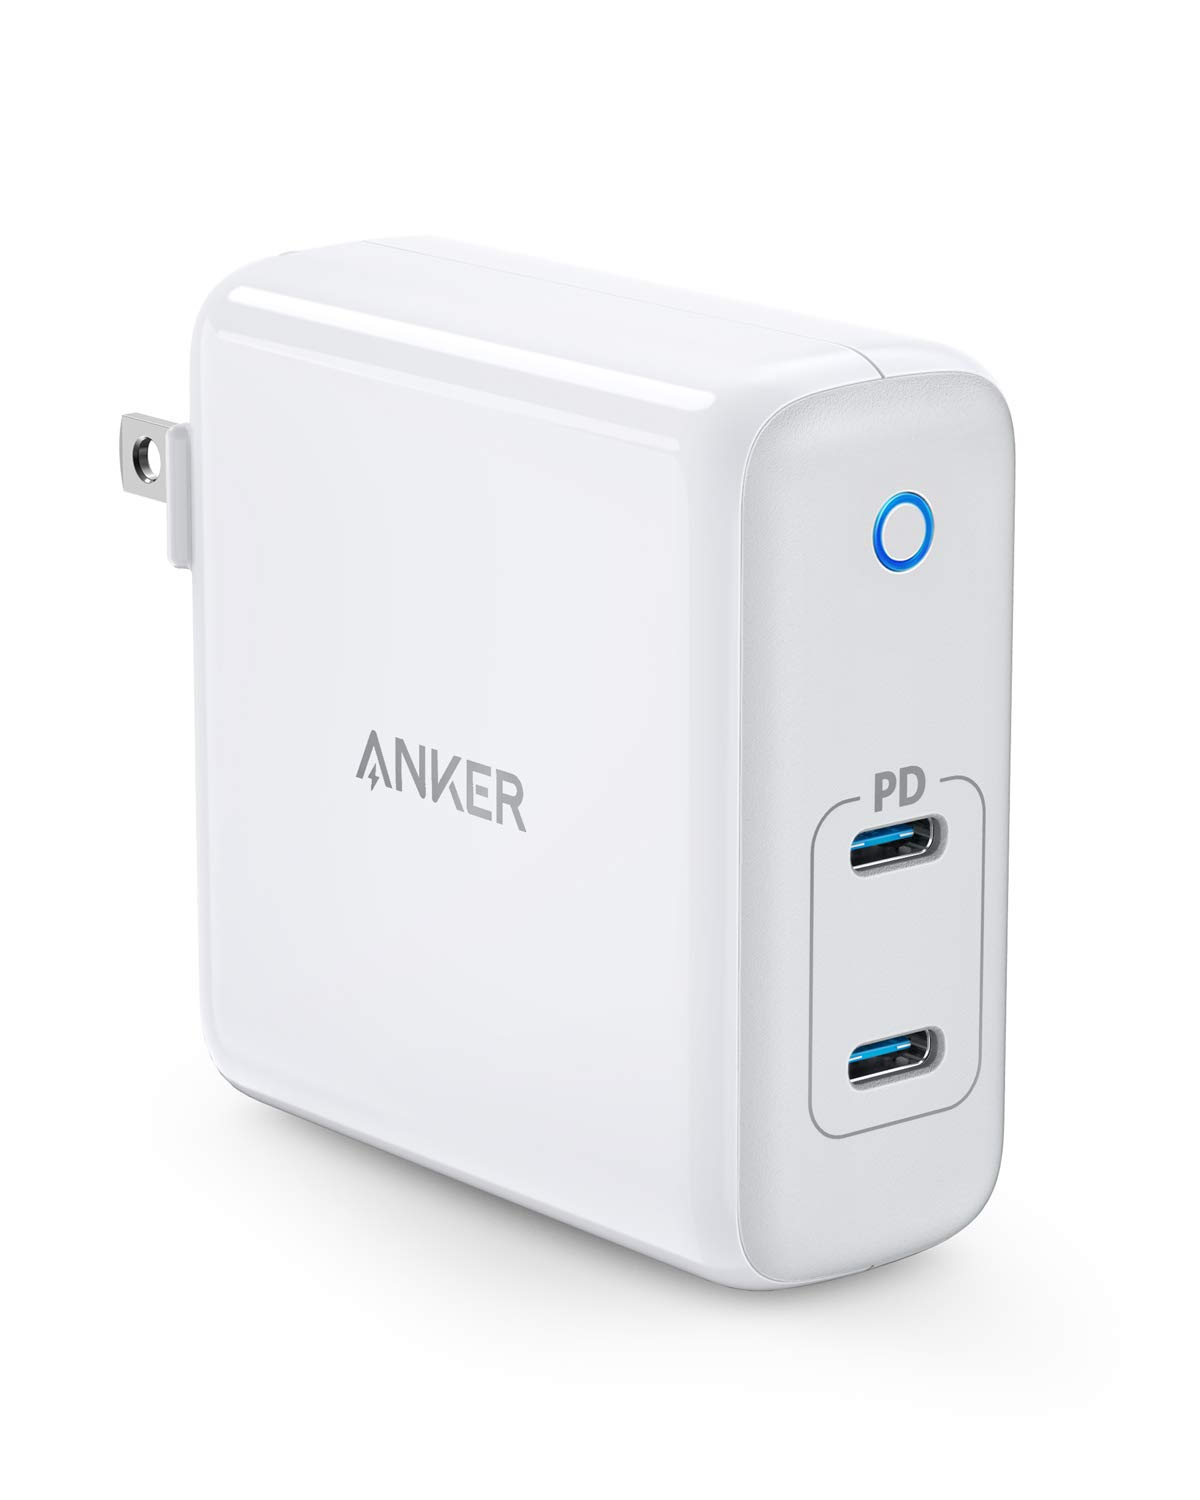 Anker、コンパクトサイズながらPD対応のUSB-Cポートを2つ搭載したUSB急速充電器｢Anker PowerPort Atom PD 2｣を発売